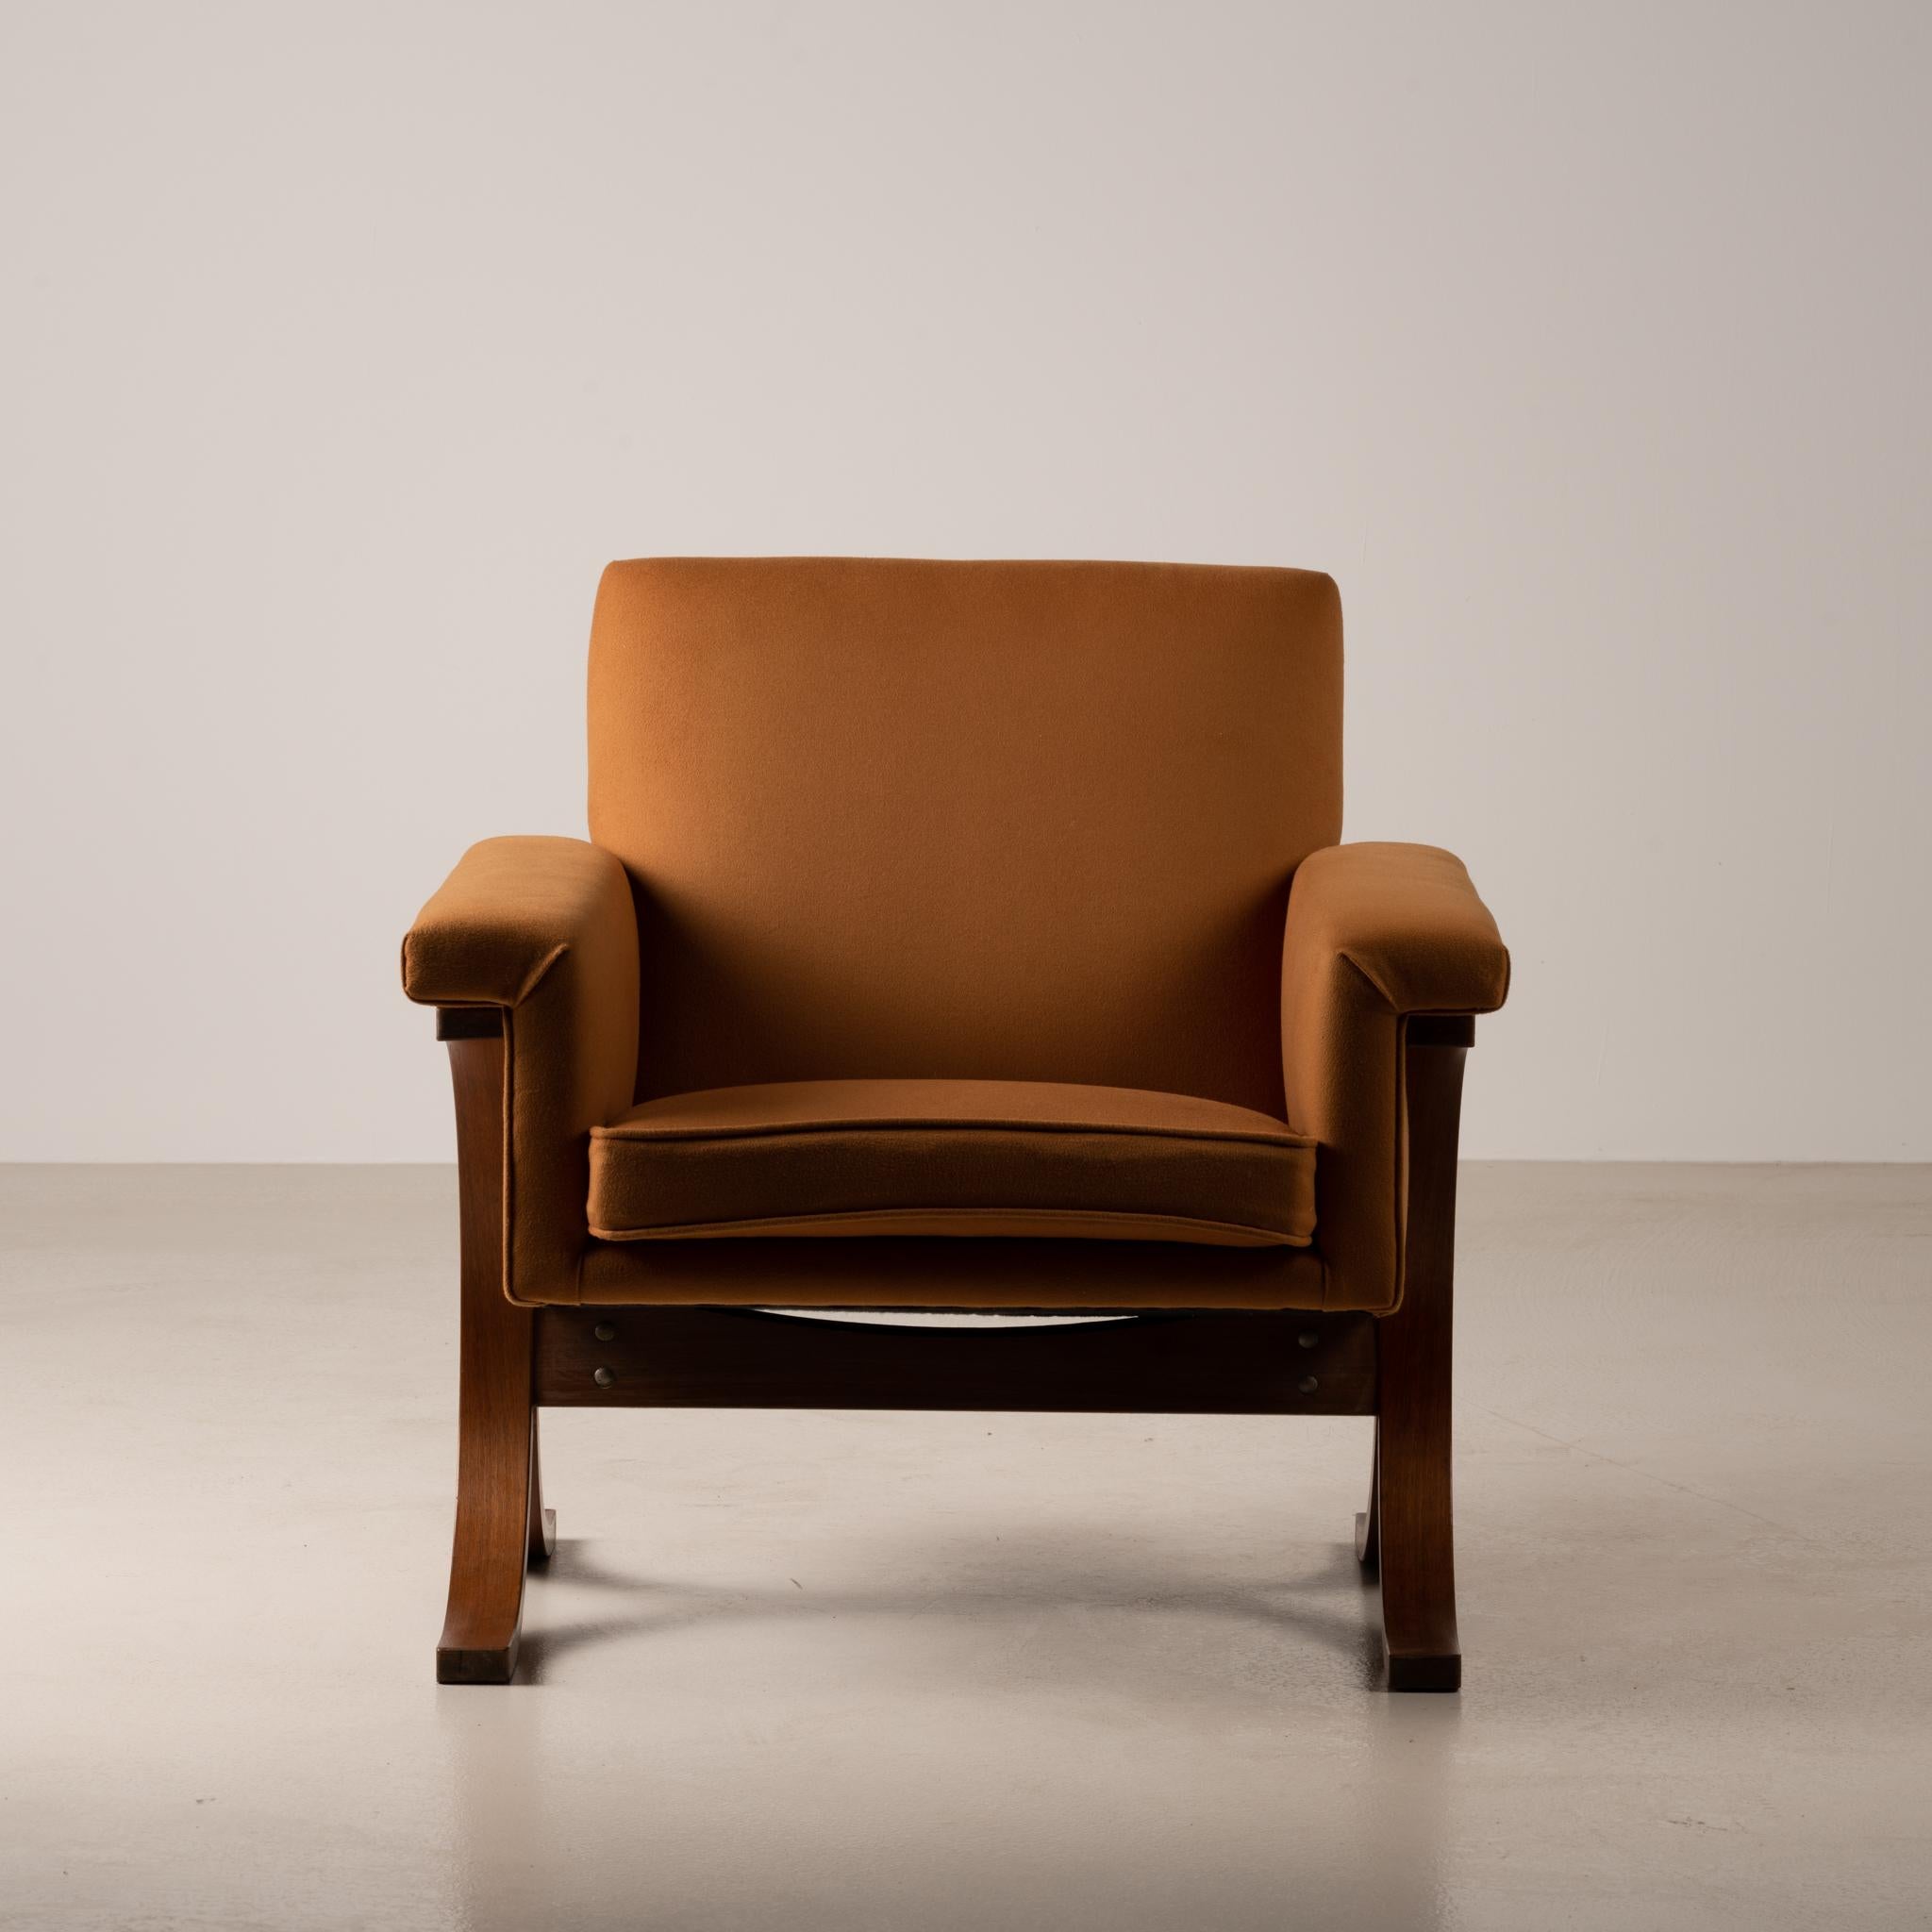 Ce fauteuil vintage très unique a été fabriqué par Tendo Mokko dans les années 1960. Il s'agit d'une pièce très rare provenant d'une usine au Japon, après le déménagement de l'entrepôt, utilisant la technique du contreplaqué moulé. Les amateurs de